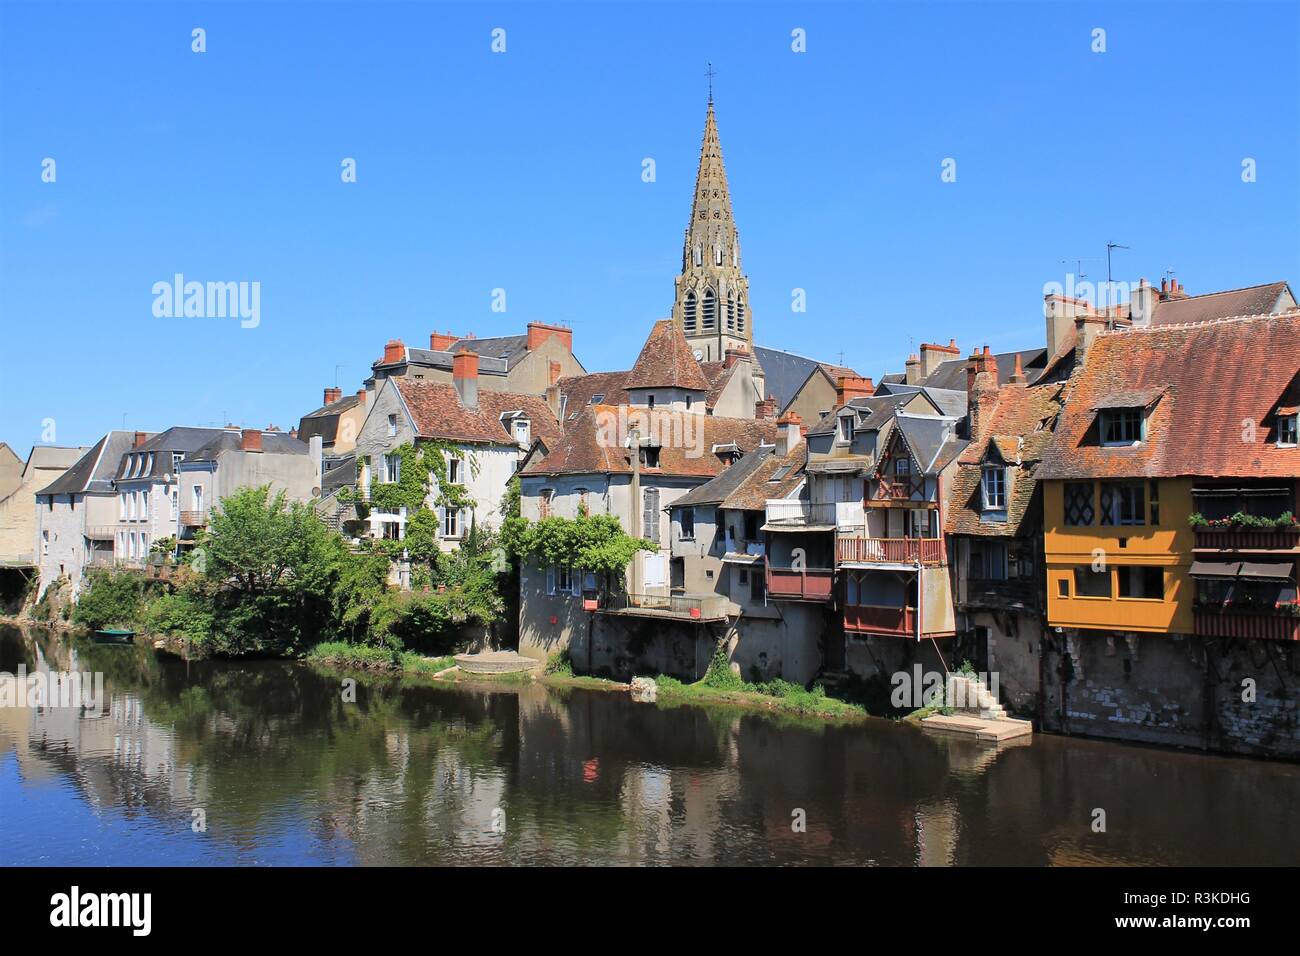 Centre historique de la ville d'Argenton sur Creuse appelée la Venise du Berry, Berry - Indre, France Banque D'Images